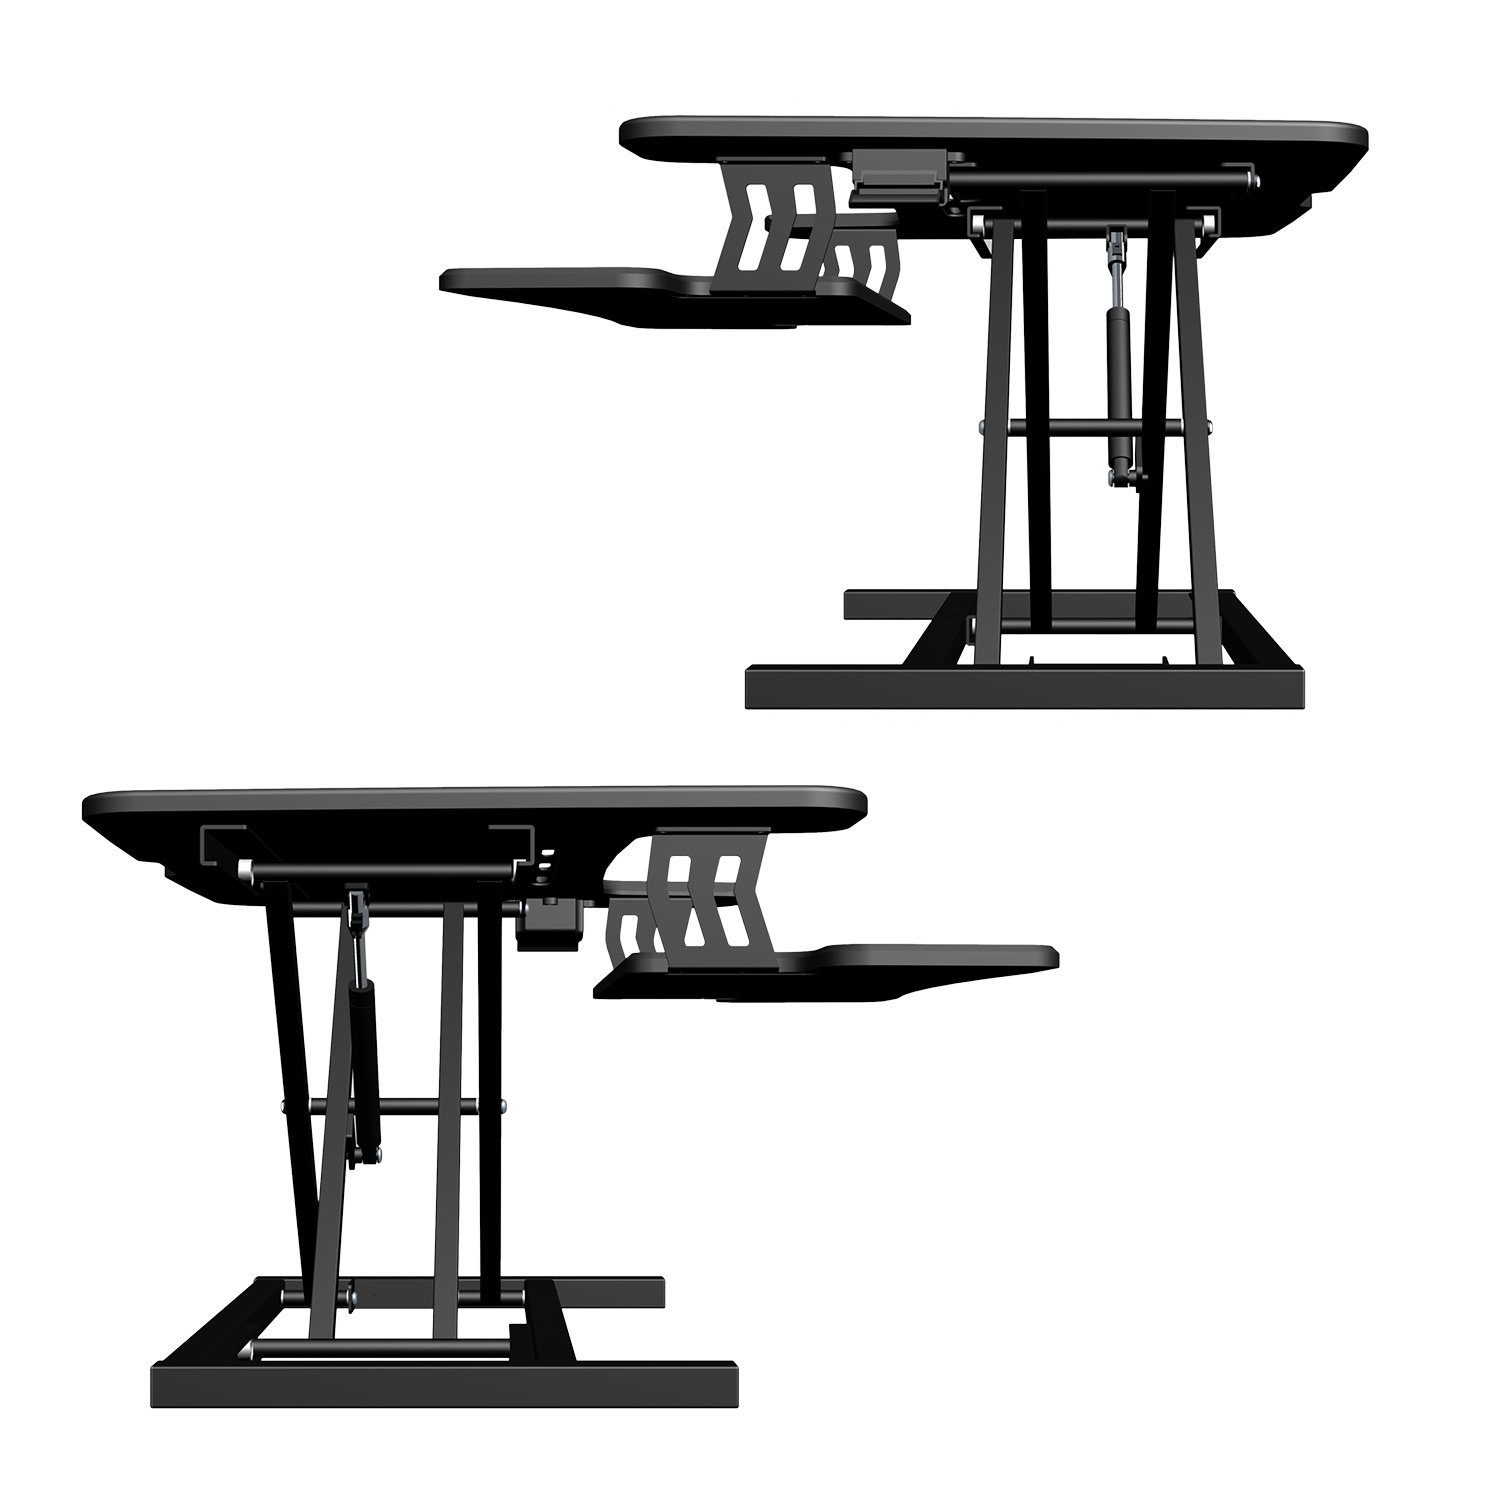 exeta Schreibtischaufsatz ergoX-S Höhenverstellbarer Tischaufsatz Stehpult manuell Homeoffice